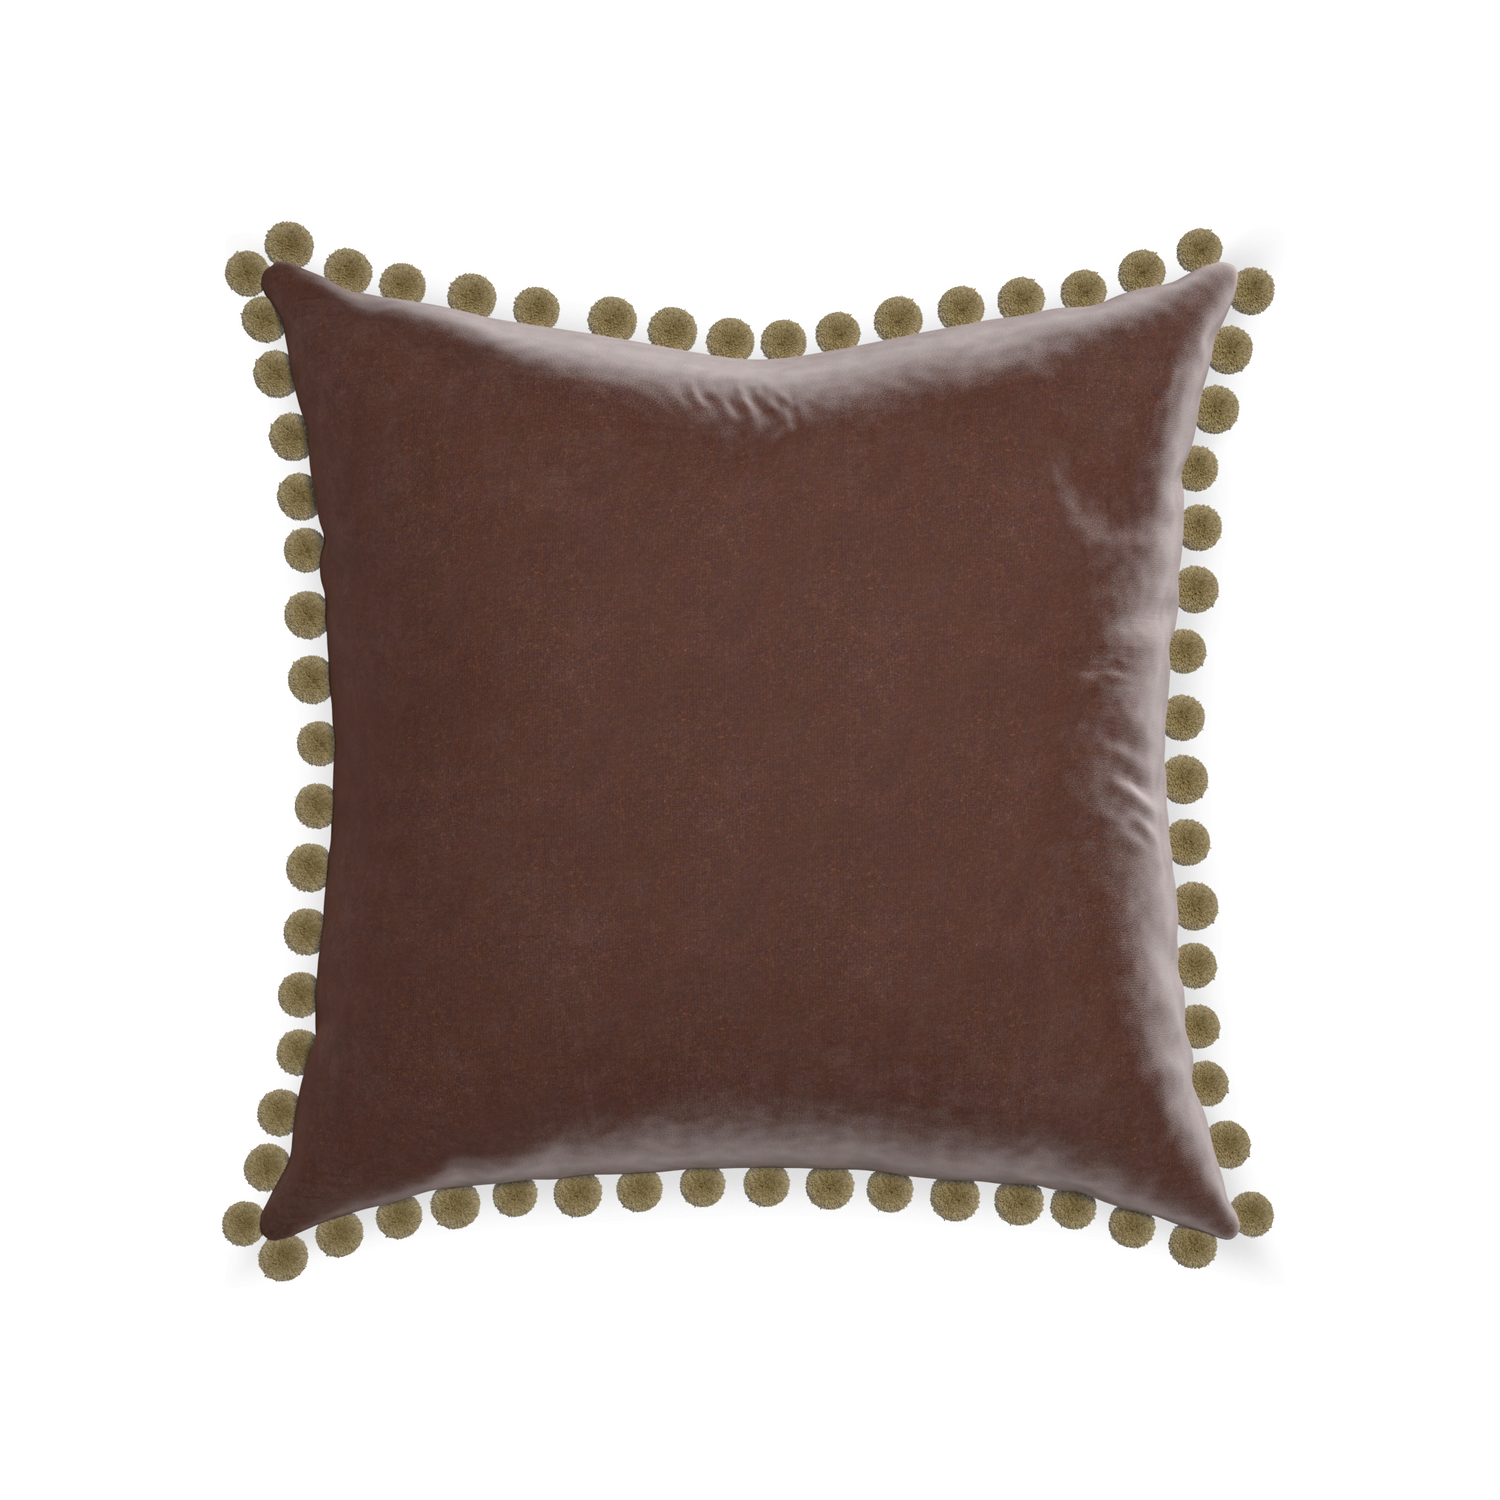 square brown velvet pillow with olive green pom poms